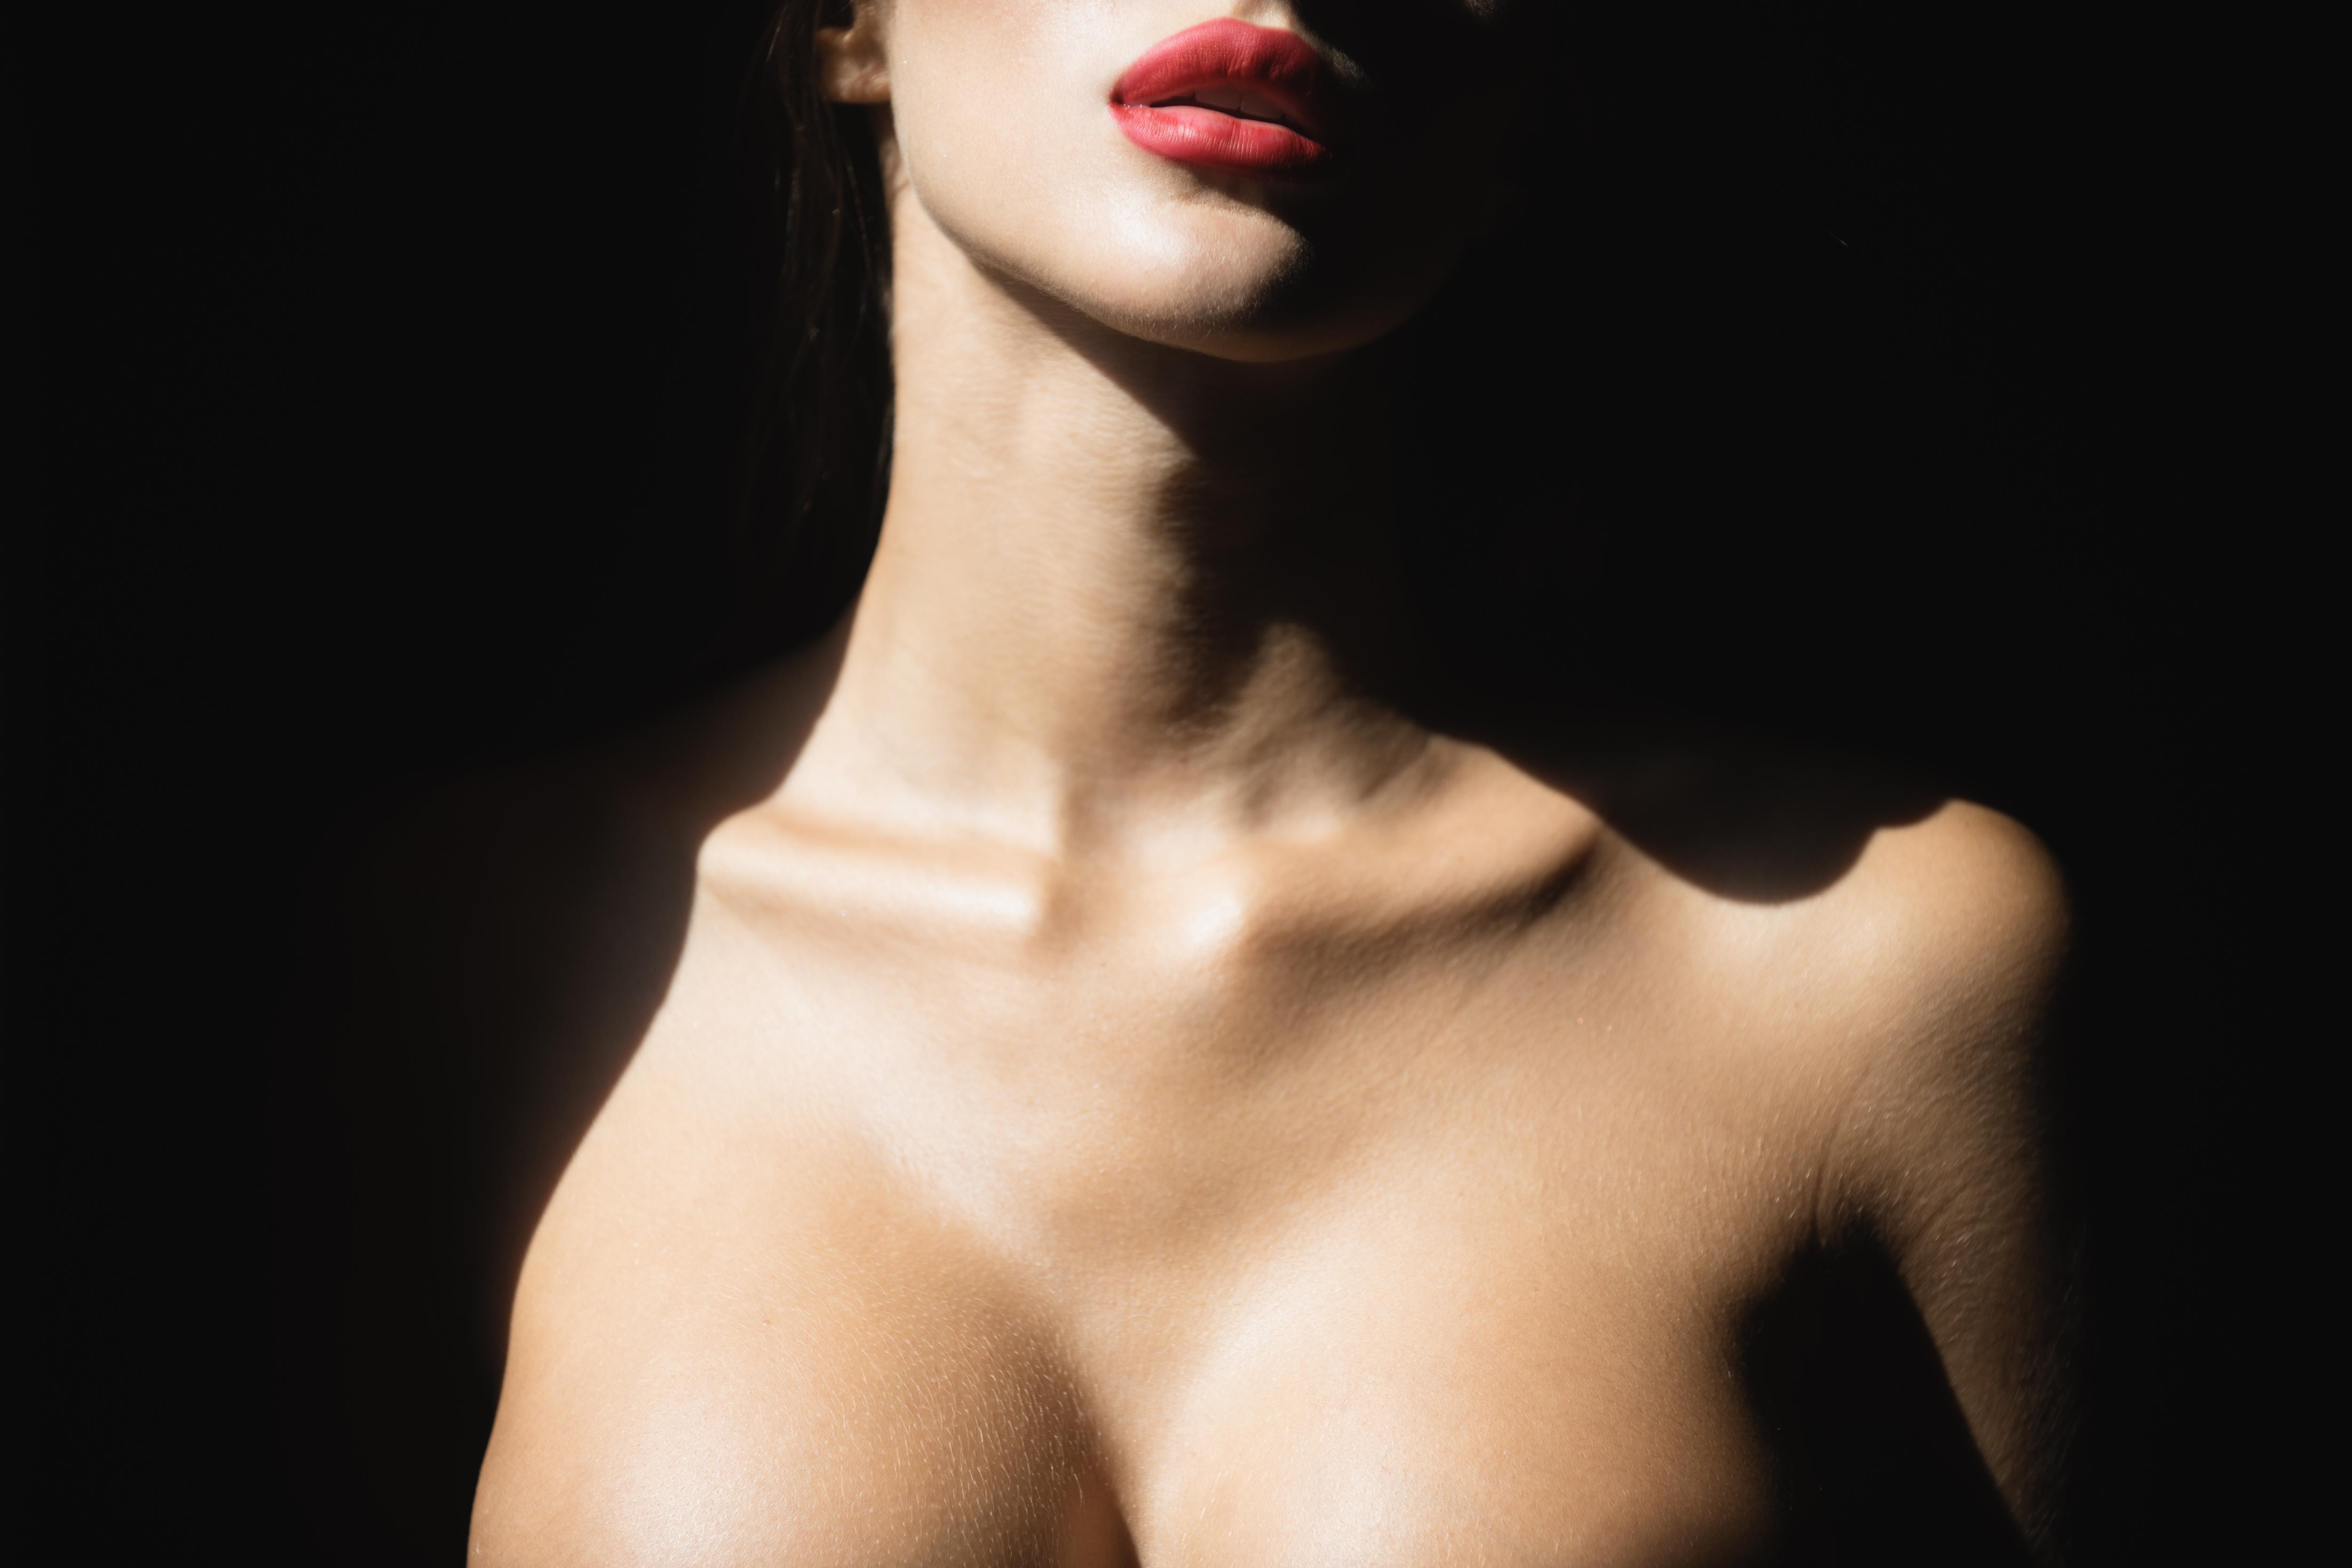 Может ли начать расти грудь после первого секса? - 20 ответов на форуме lavandasport.ru ()